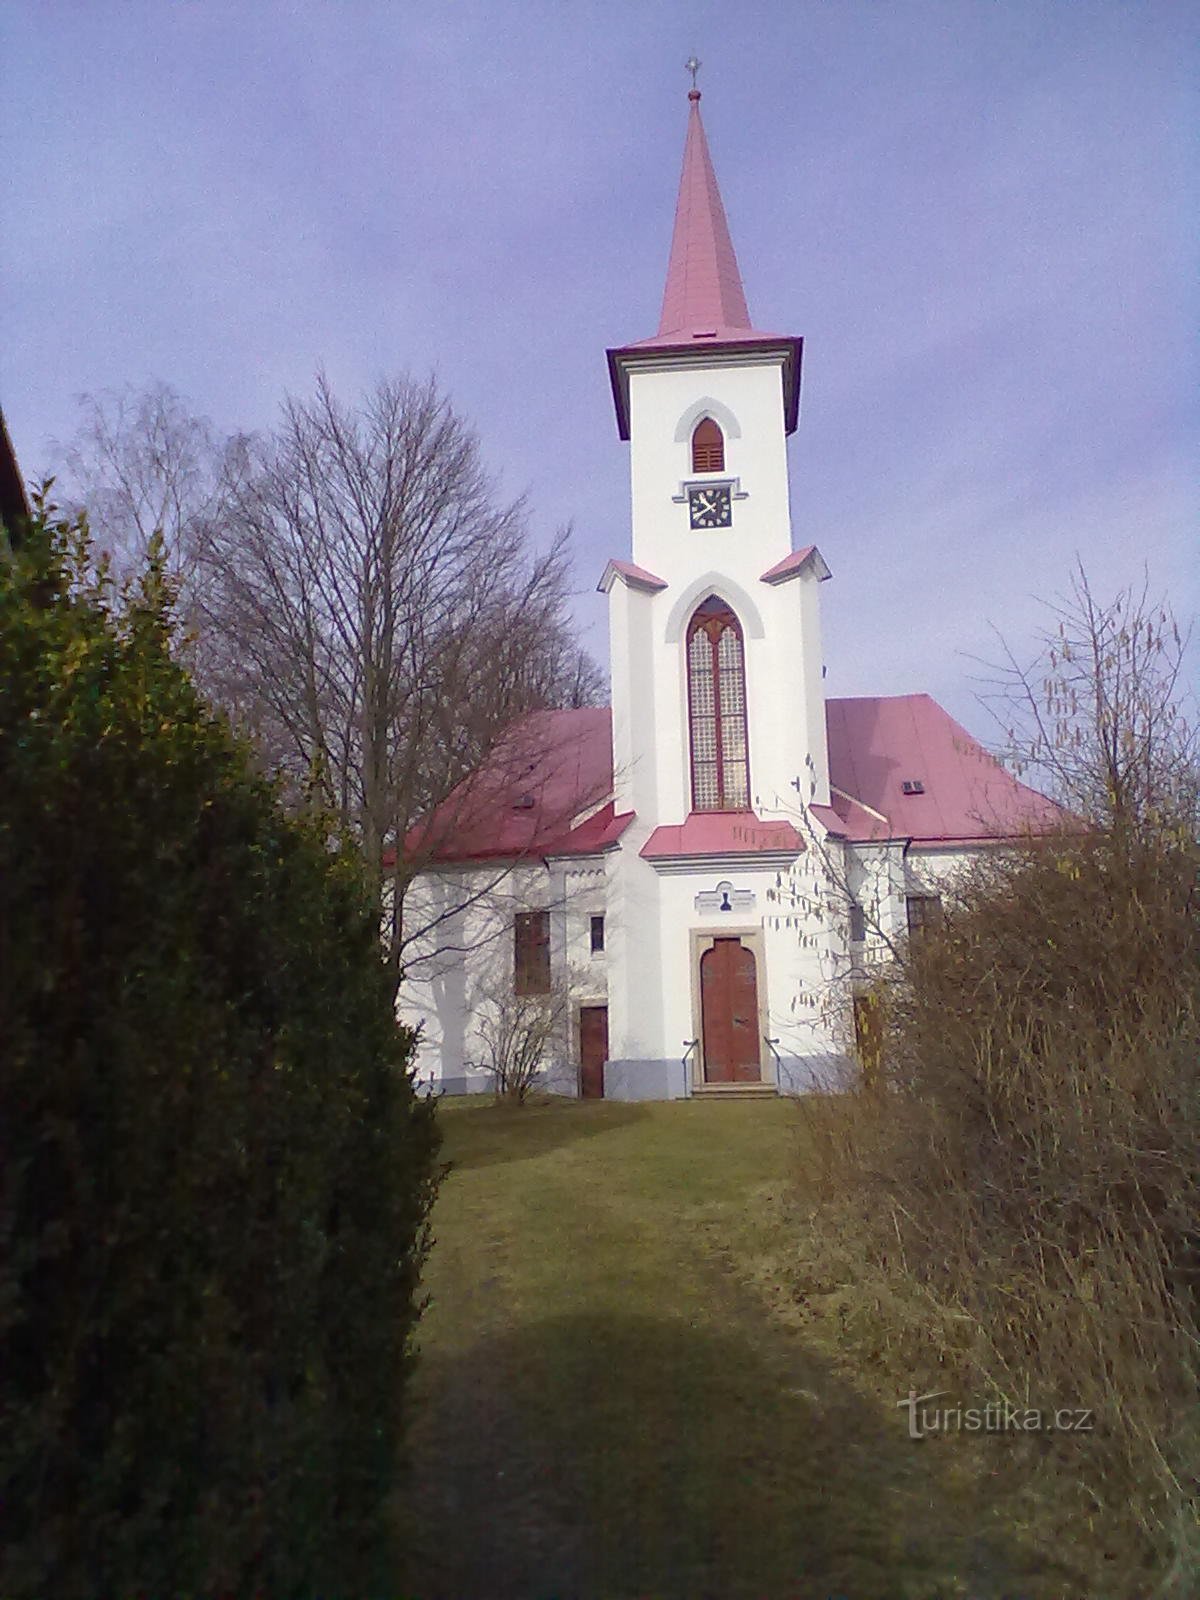 2. Ευαγγελική εκκλησία στο Moravč από το 1785.